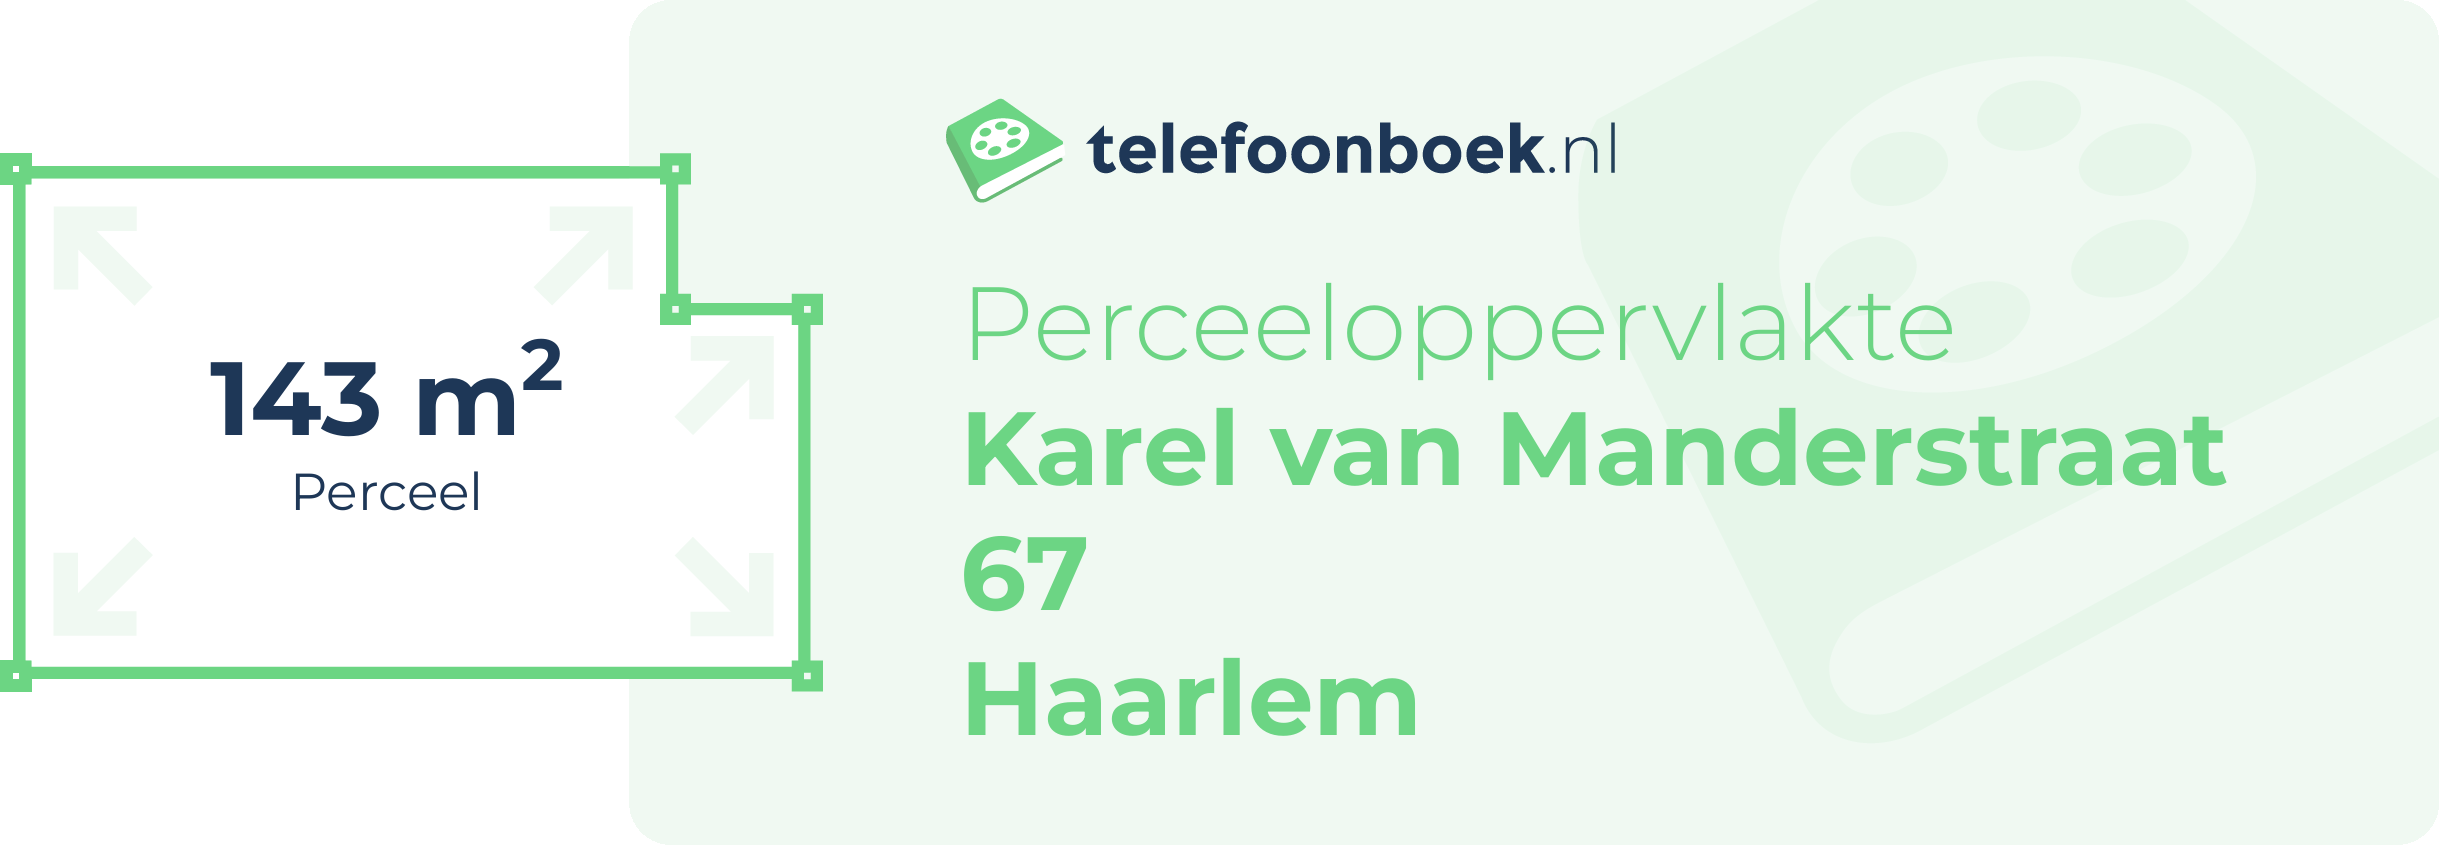 Perceeloppervlakte Karel Van Manderstraat 67 Haarlem